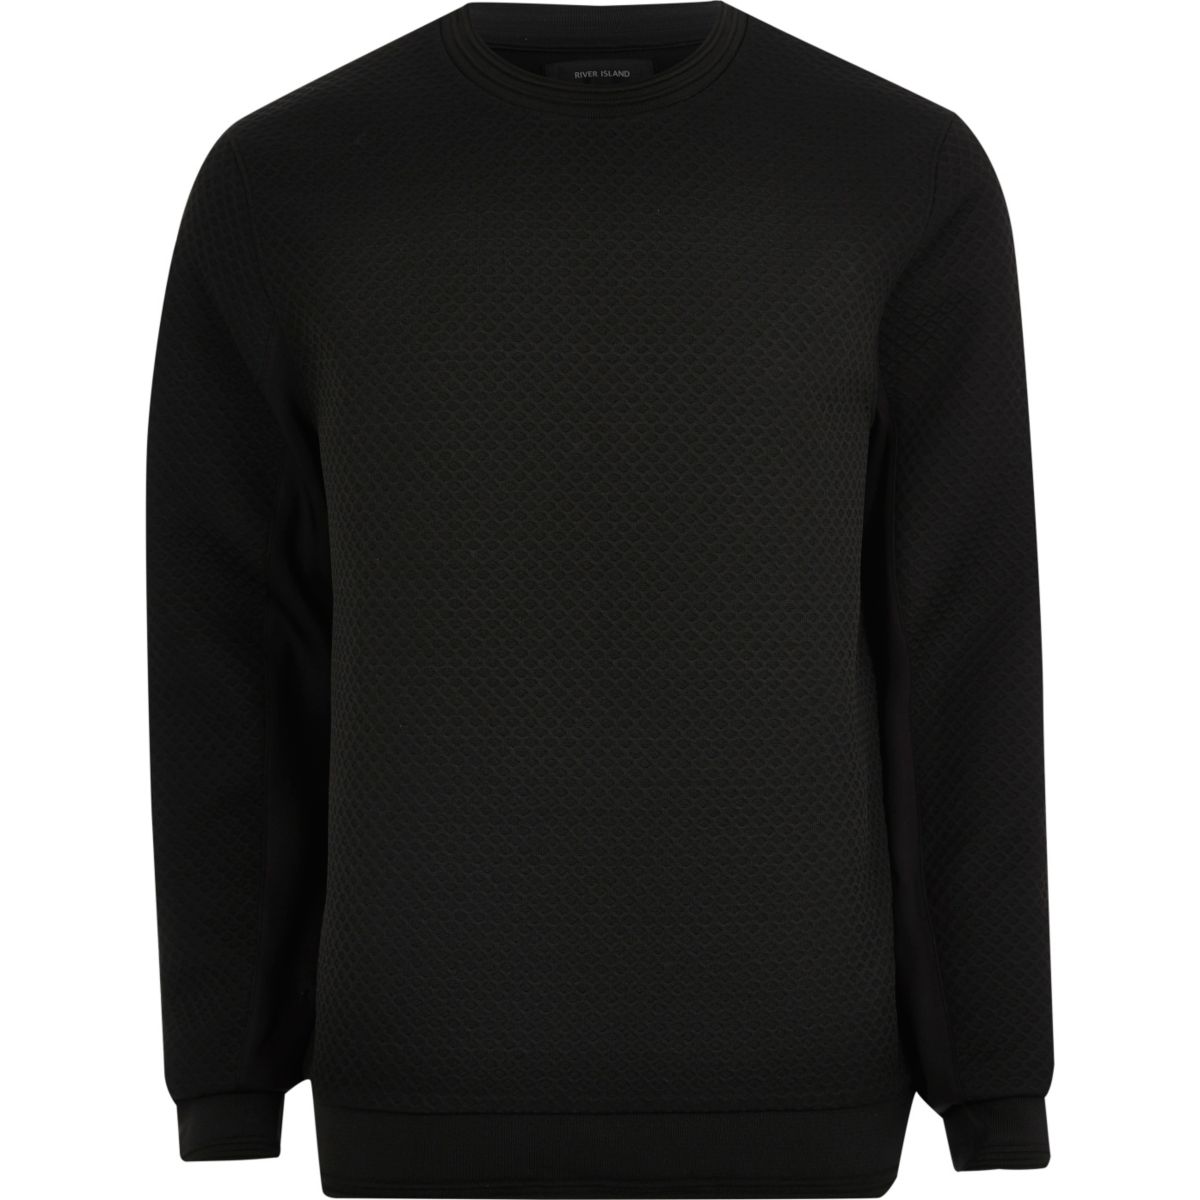 Download Black textured crew neck sweatshirt - Hoodies ...